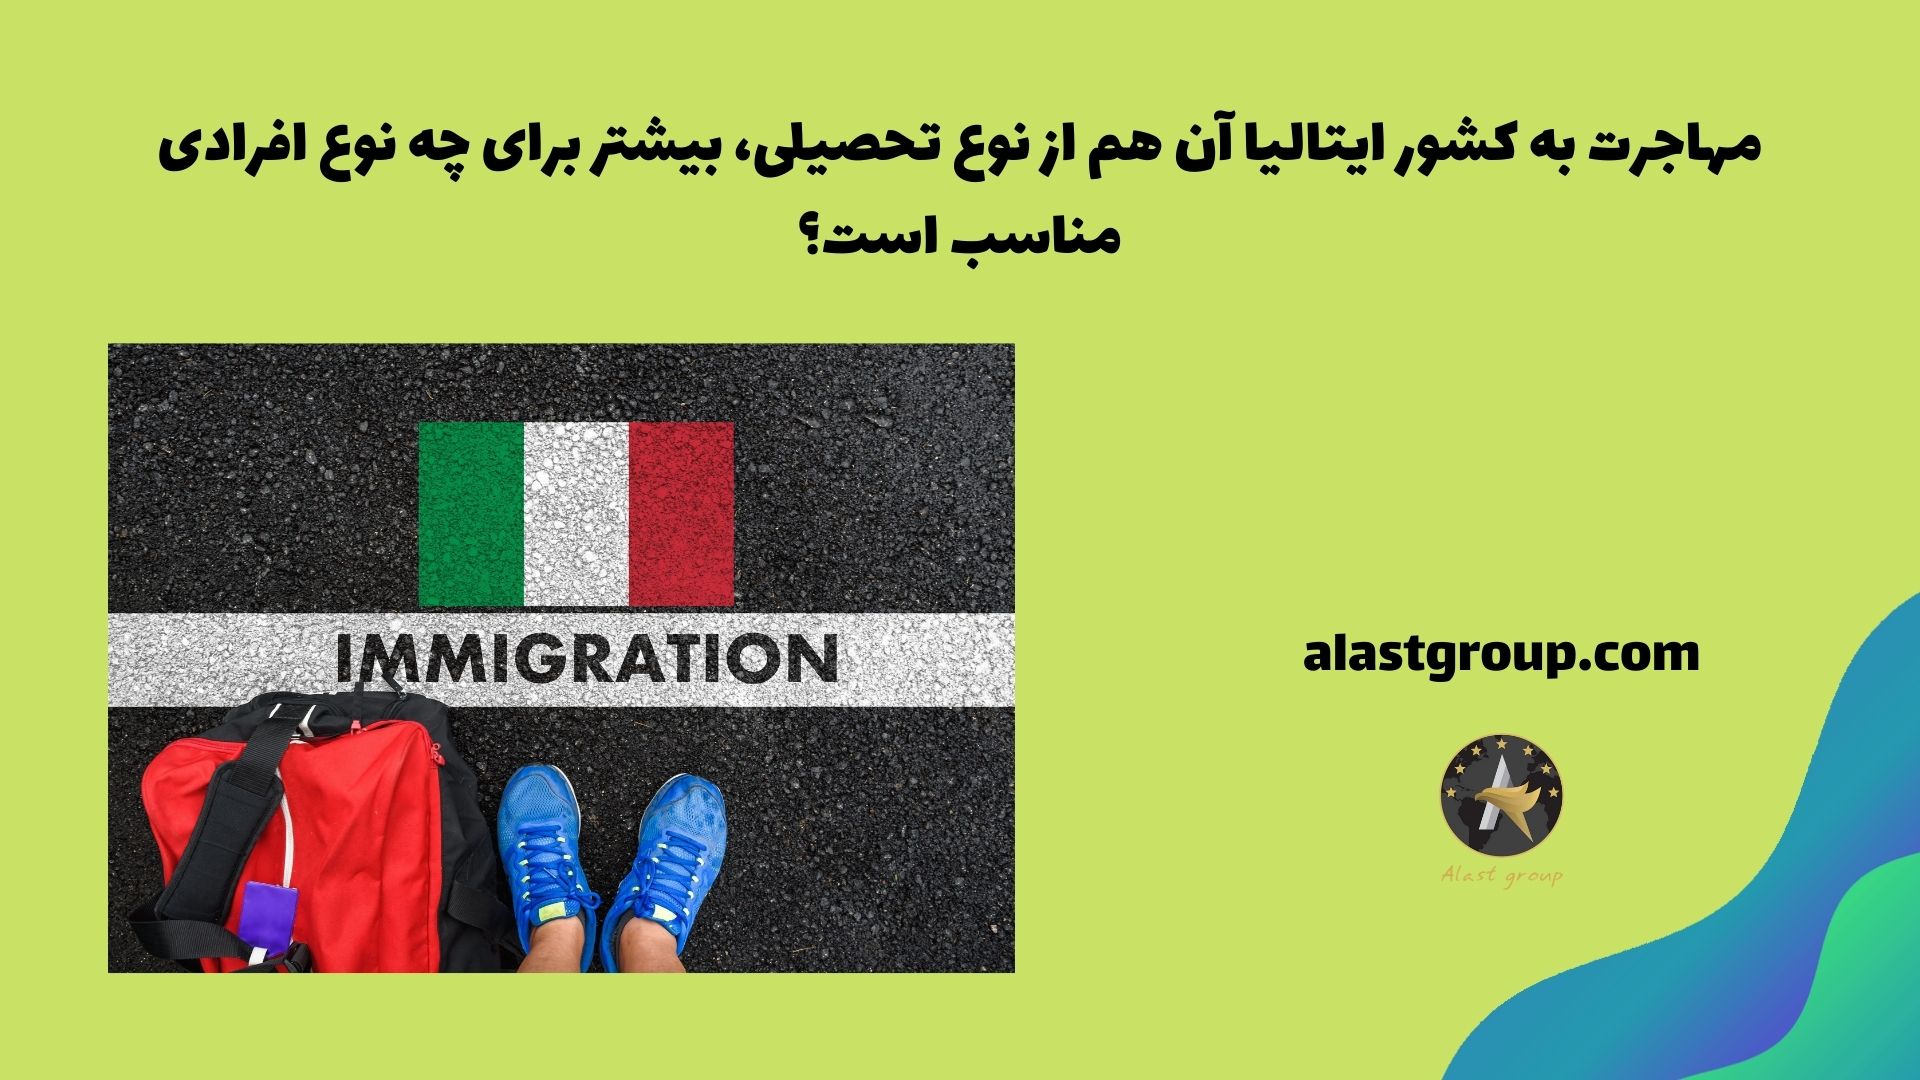 مهاجرت به کشور ایتالیا آن هم از نوع تحصیلی، بیشتر برای چه نوع افرادی مناسب است؟